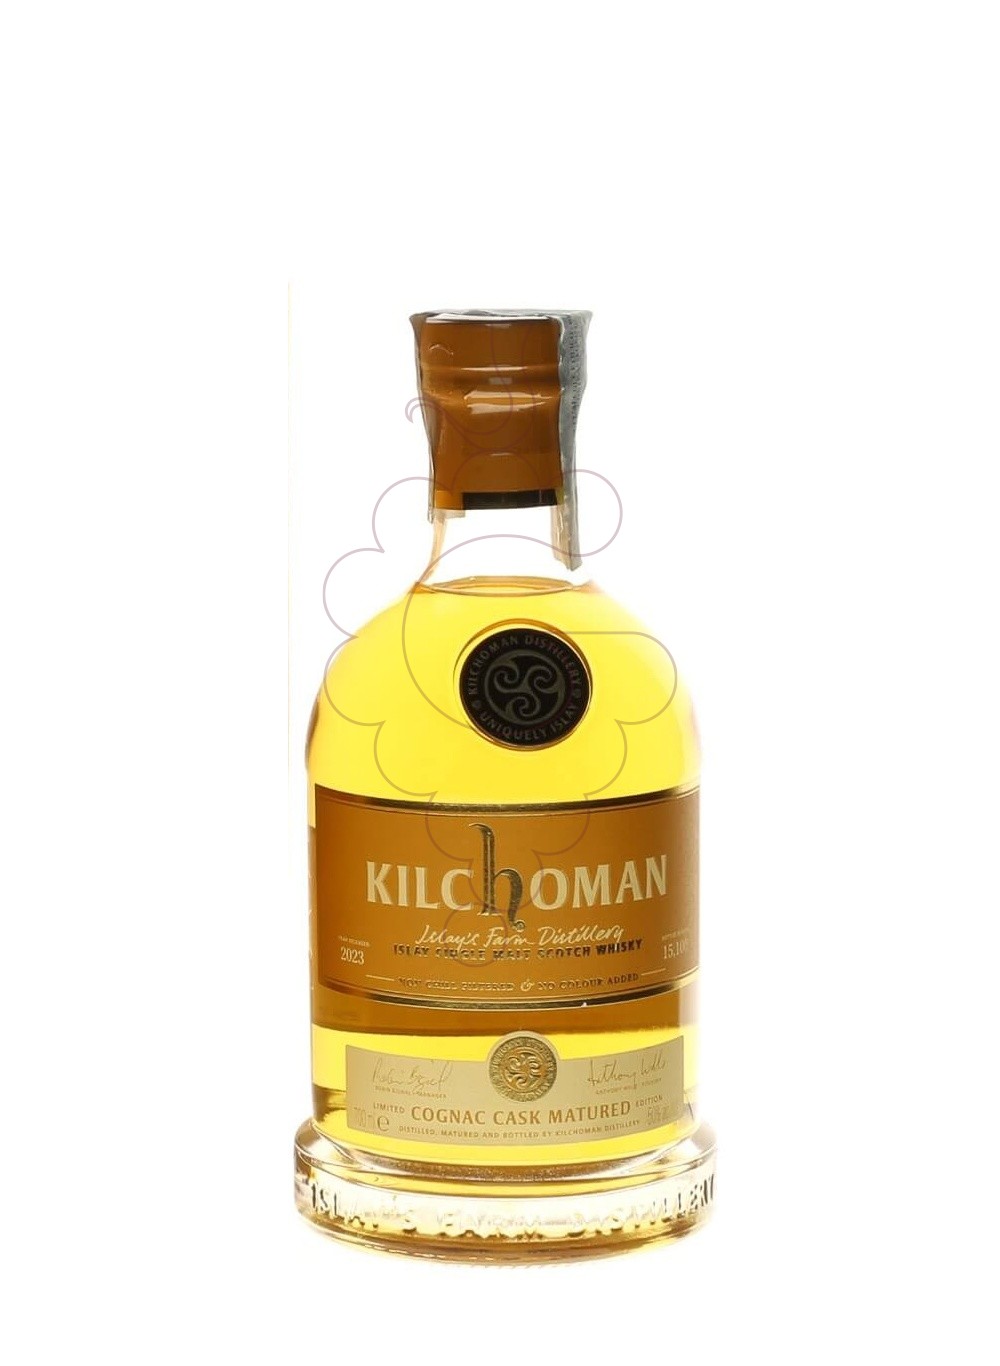 Foto Whisky Kilchoman cognac cask matured